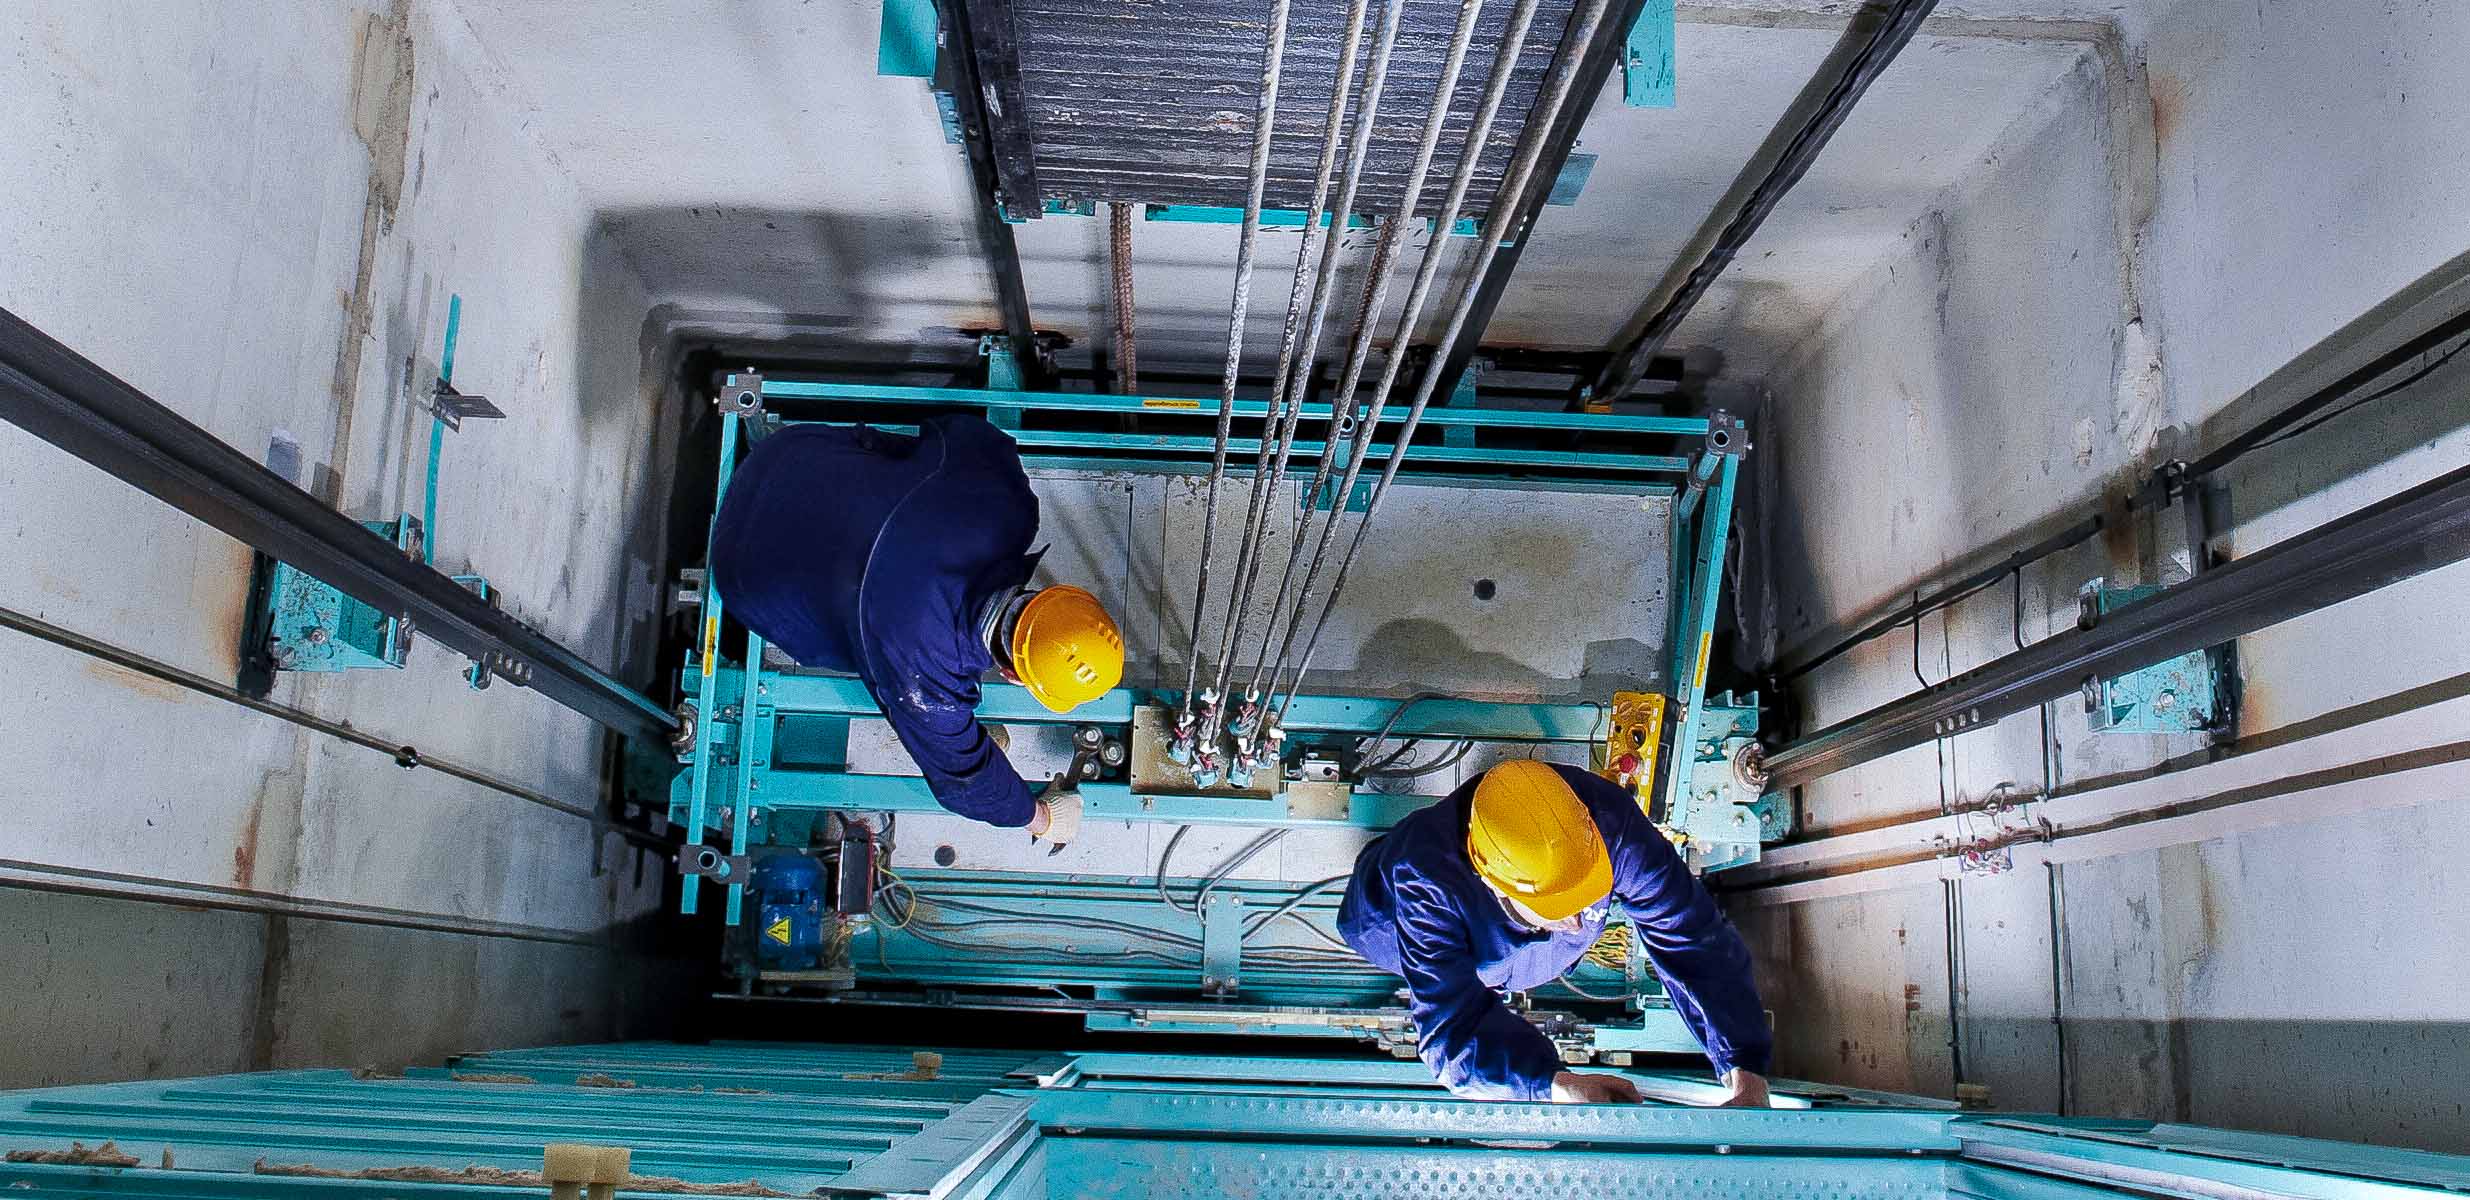 Фонд ЖКХ перечислит около 24 миллионов на замену костромских лифтов